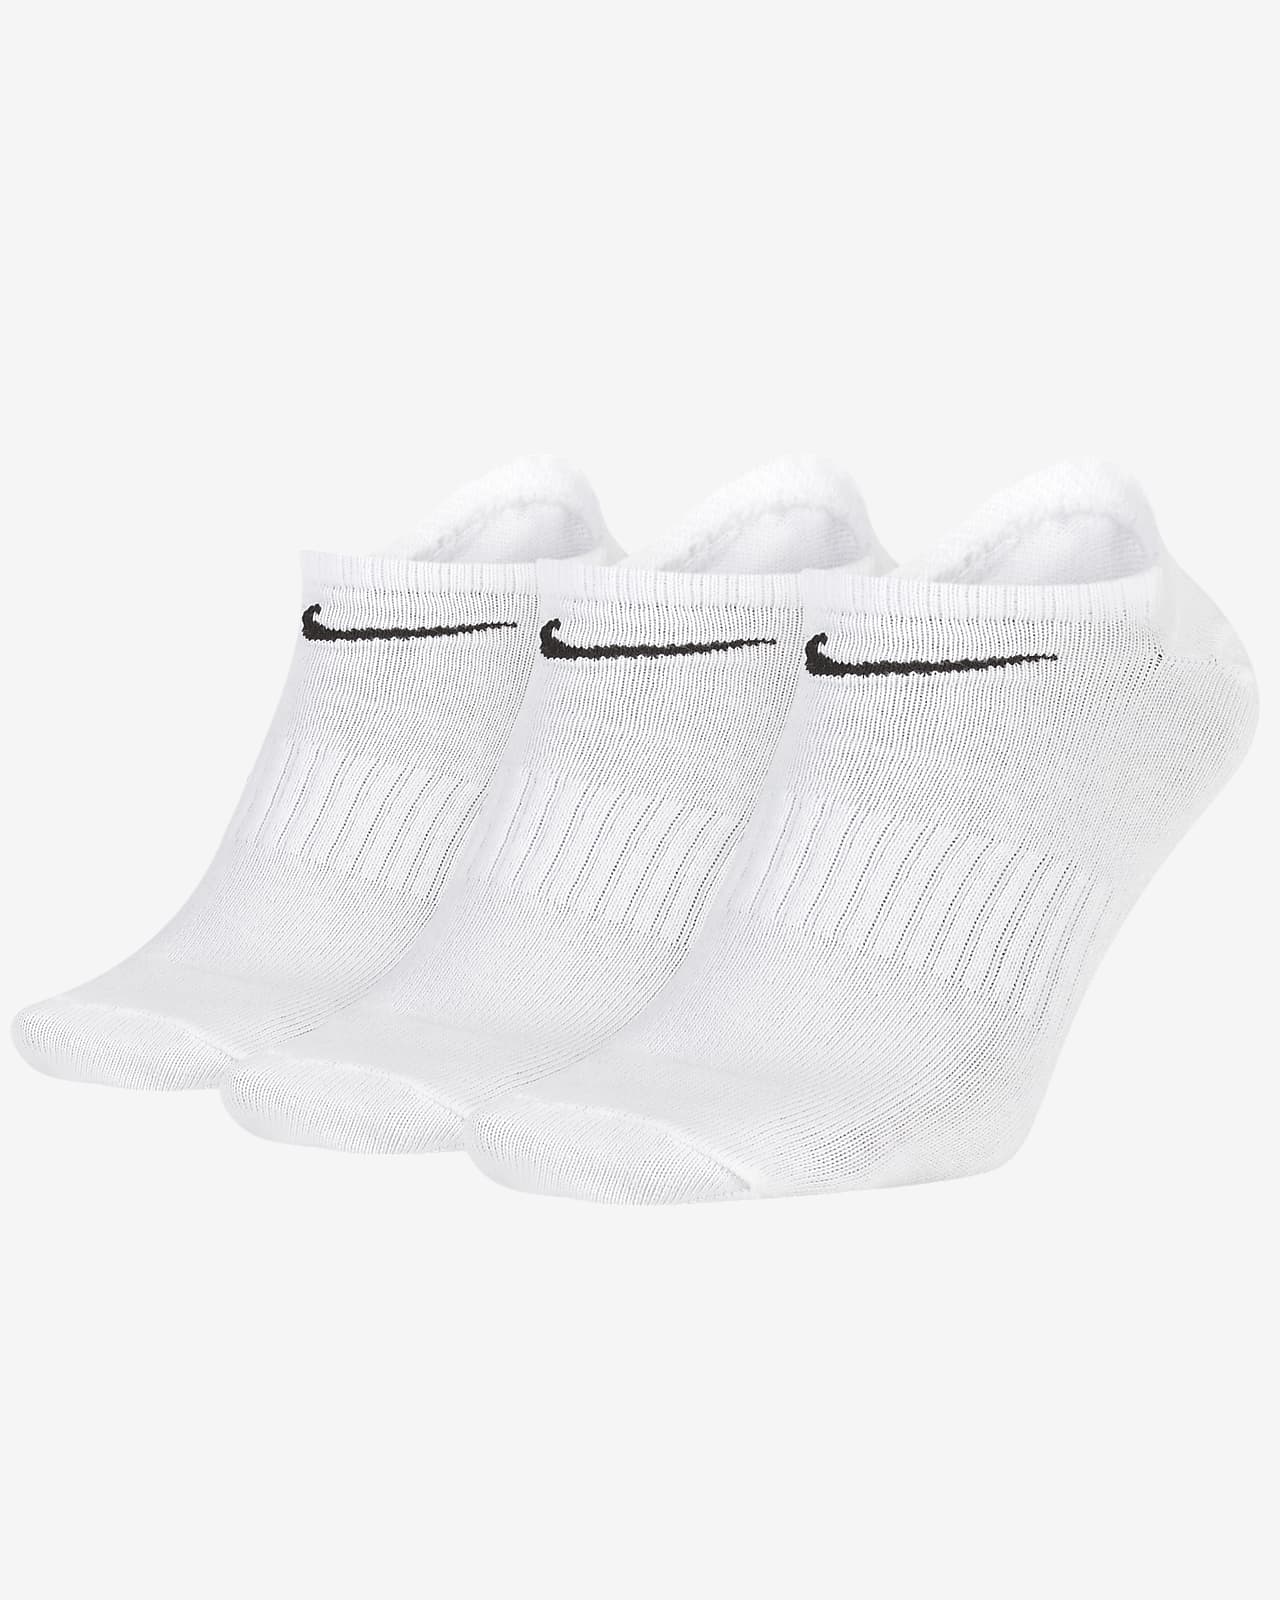 ถุงเท้าเทรนนิ่งแบบซ่อน Nike Everyday Lightweight (3 คู่)